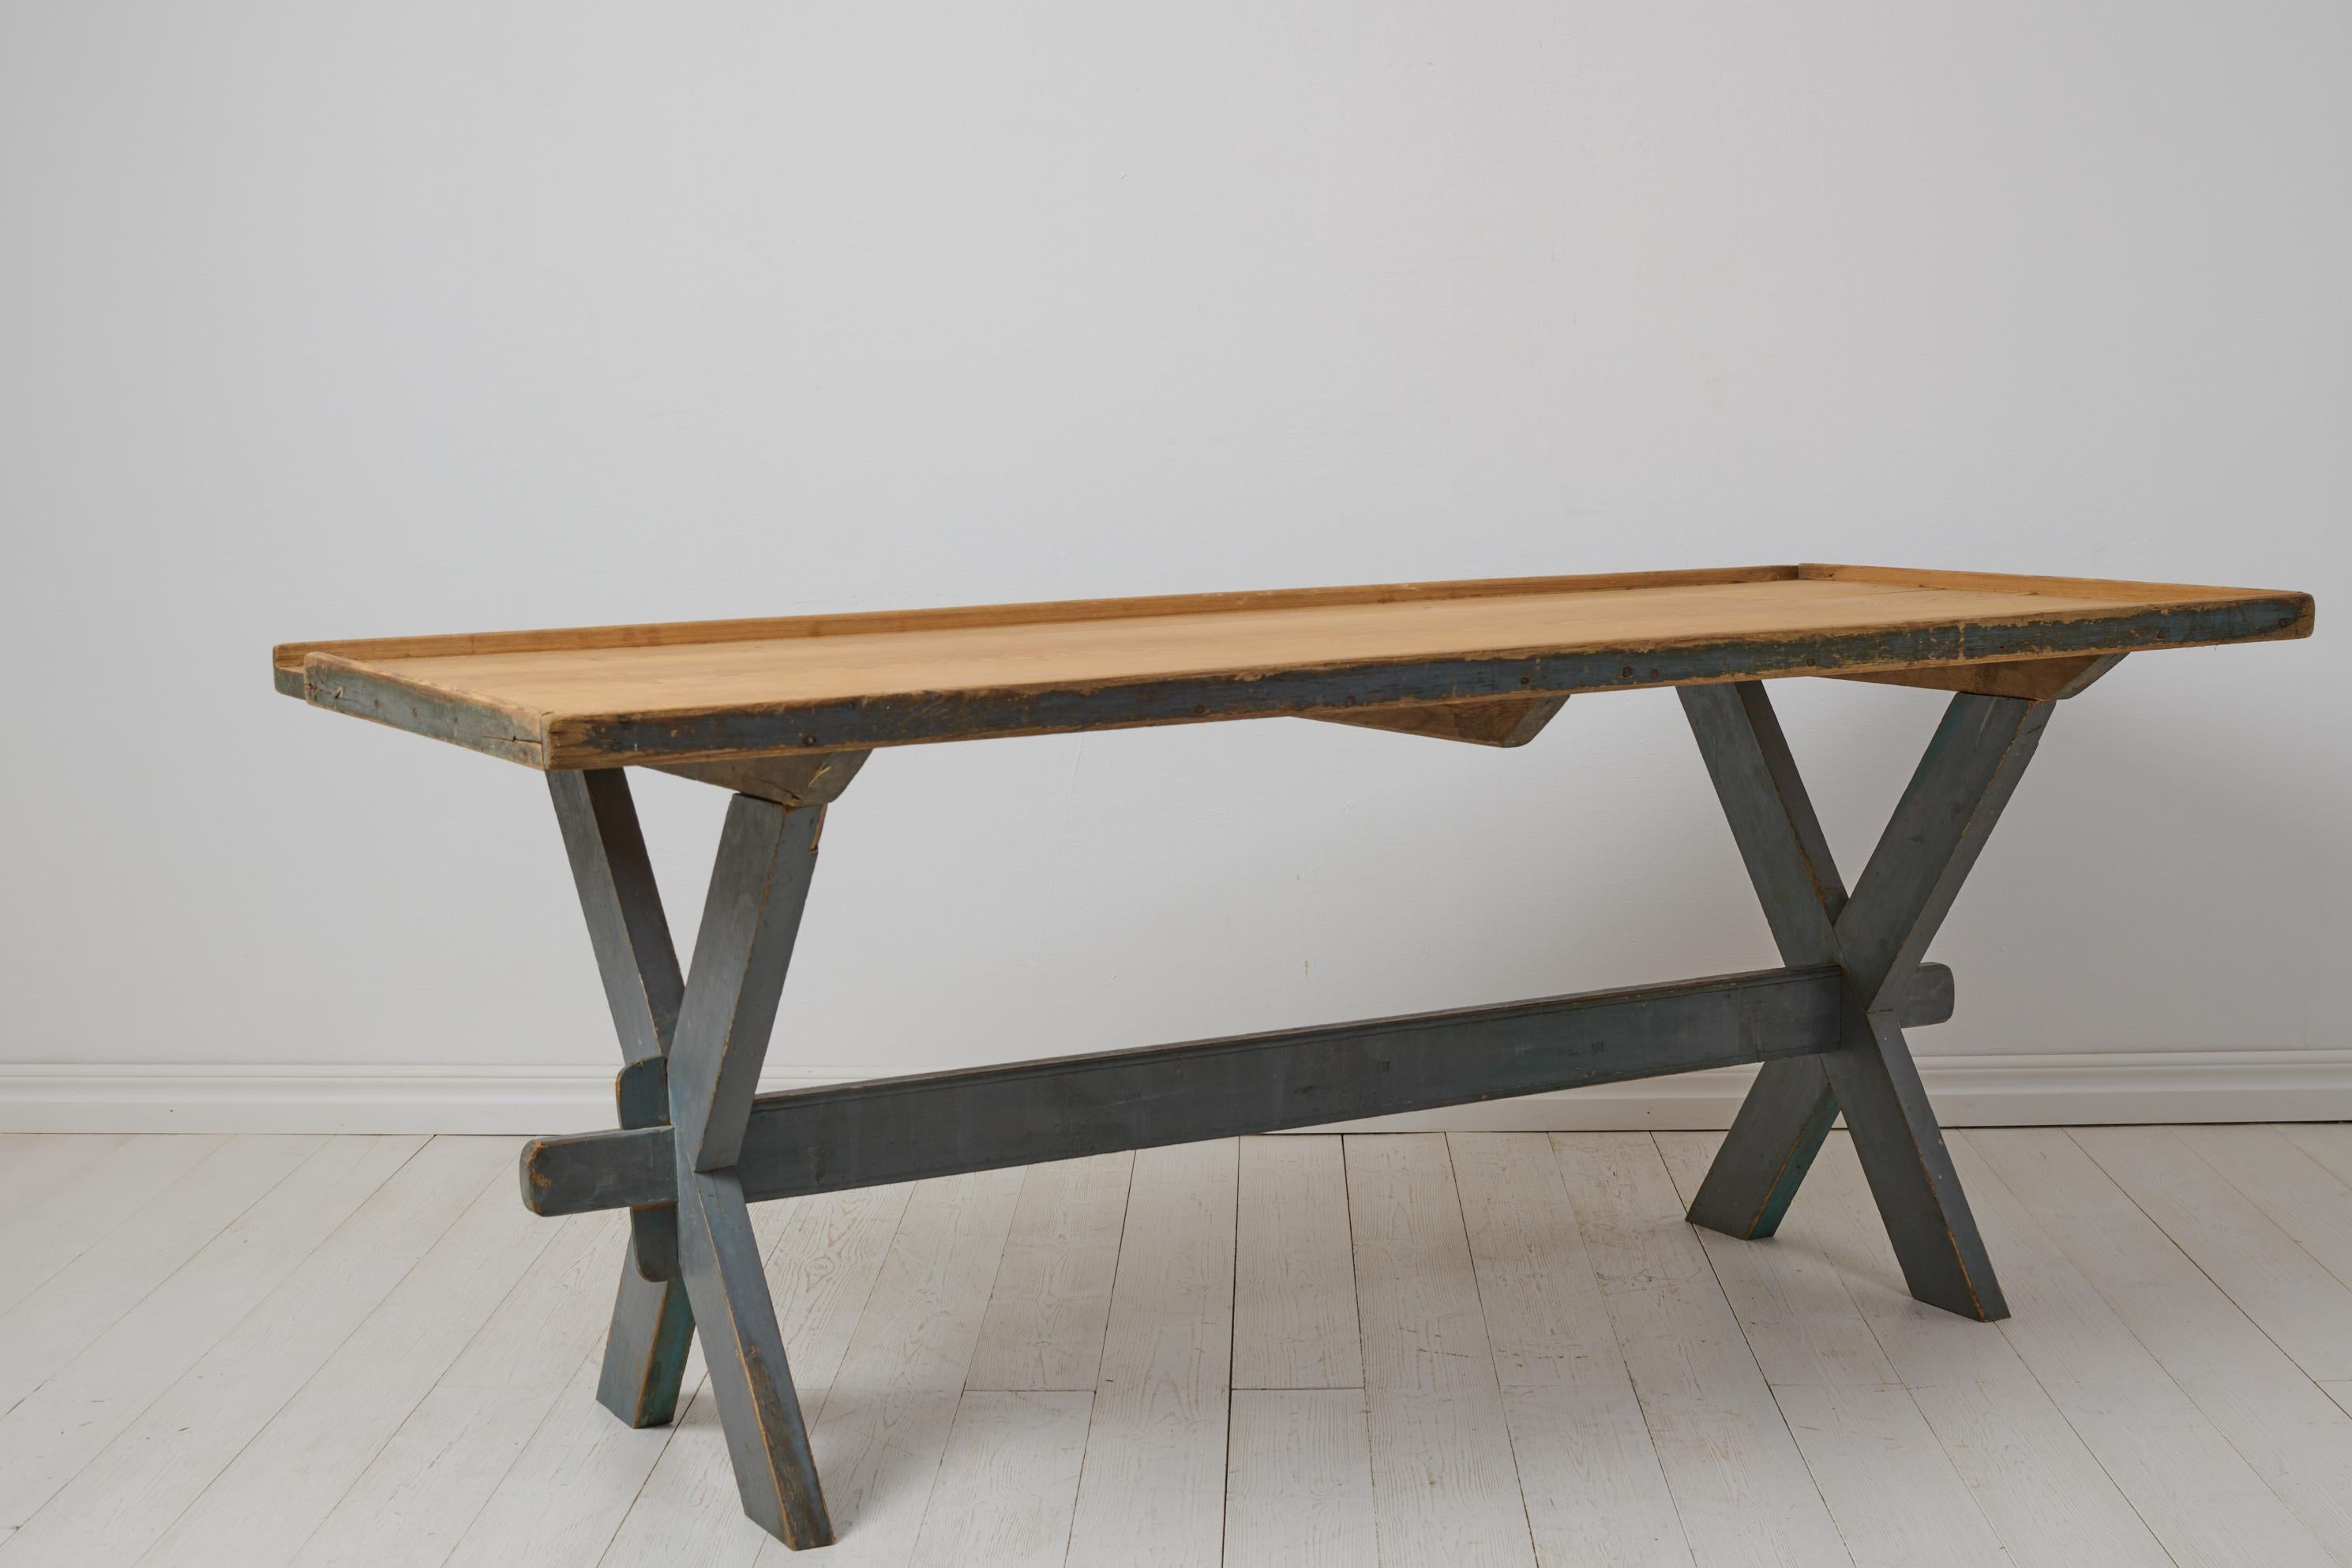 Table de travail ou de salle à manger ancienne du nord de la Suède. La table est un véritable meuble de maison de campagne suédoise des années 1840-1850. La table est une table à tréteaux avec un plateau solide sur un piétement. Bonne hauteur et